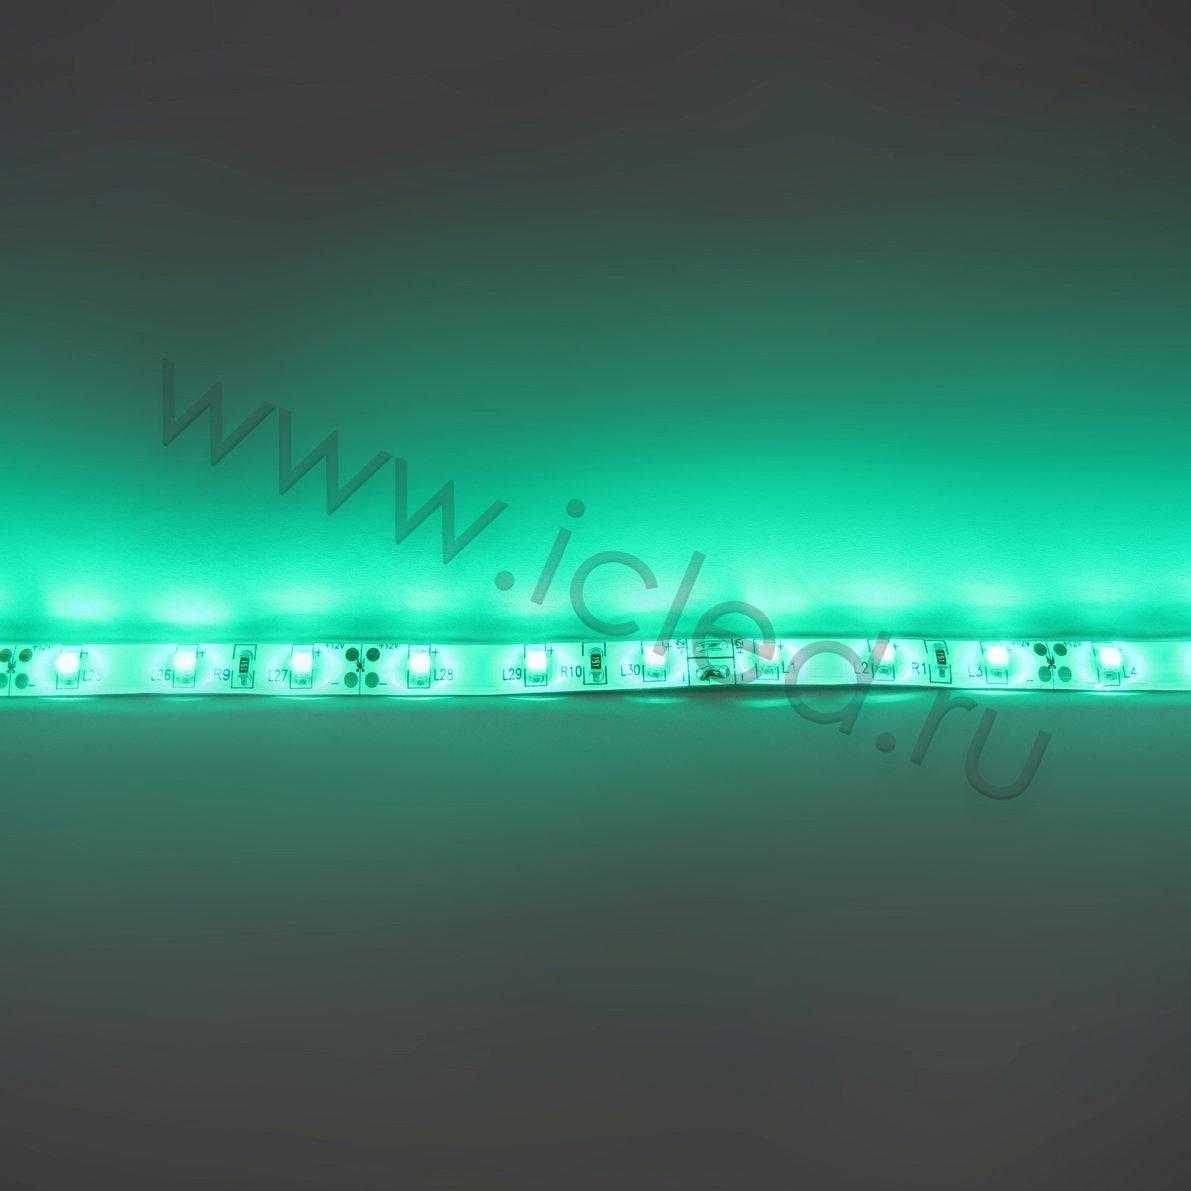 Влагозащищенные светодиодные ленты Светодиодная лента Standart PRO class, 3528, 60 led/m, Green, 12V, IP65 Icled